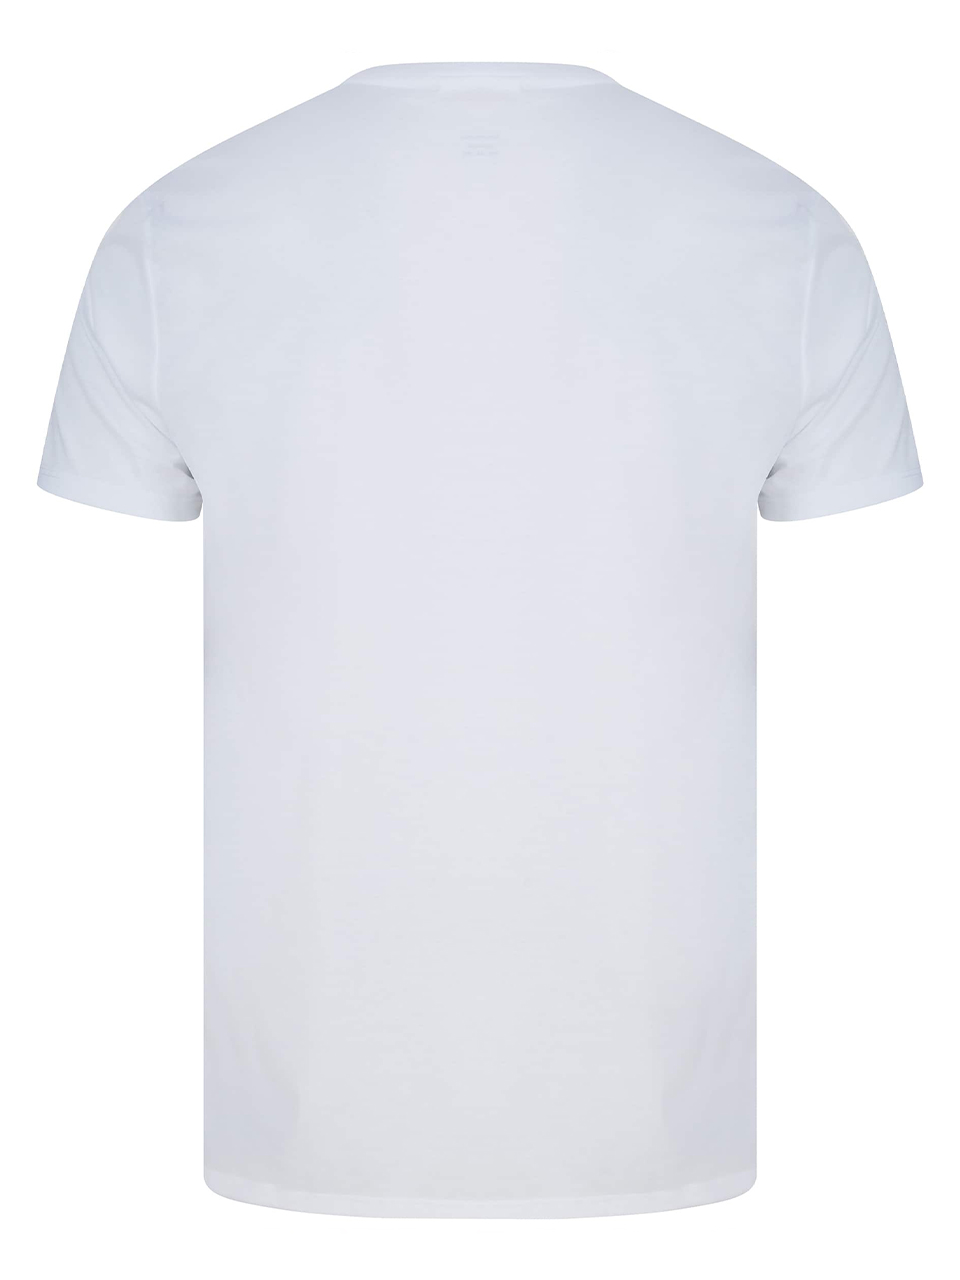 Imagem de: Camiseta Lacoste Branca com Logo